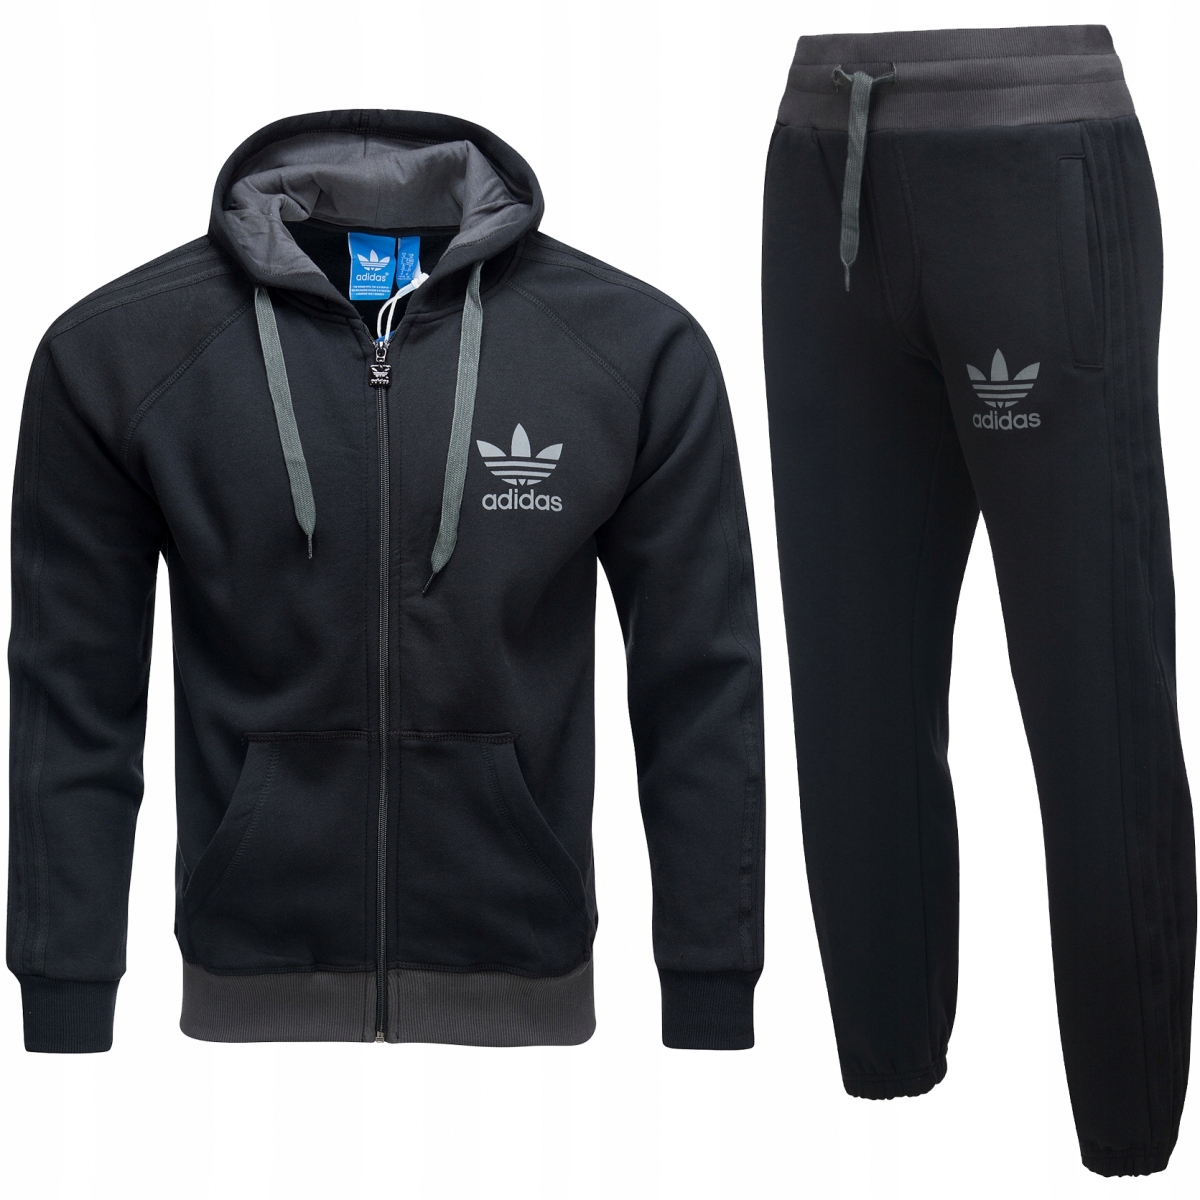 pariteit titel Mm Adidas Originals czarny dres męski komplet L 10433723985 - Allegro.pl